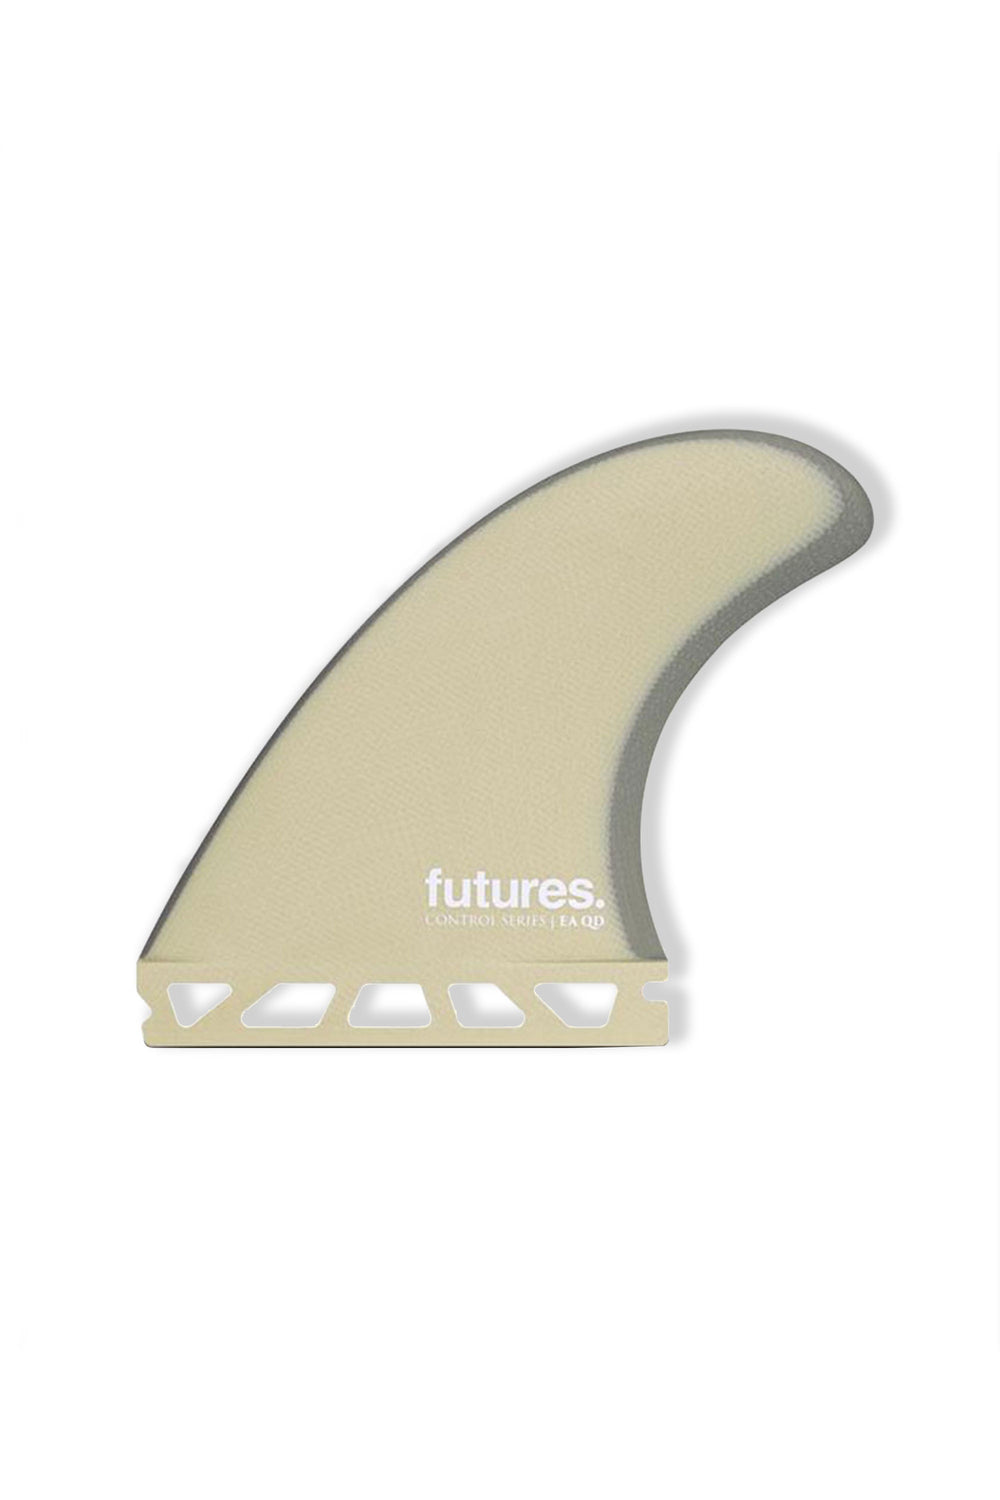 Pukas Surf Shop - Futures - Derives Quad Ea Control Sandy